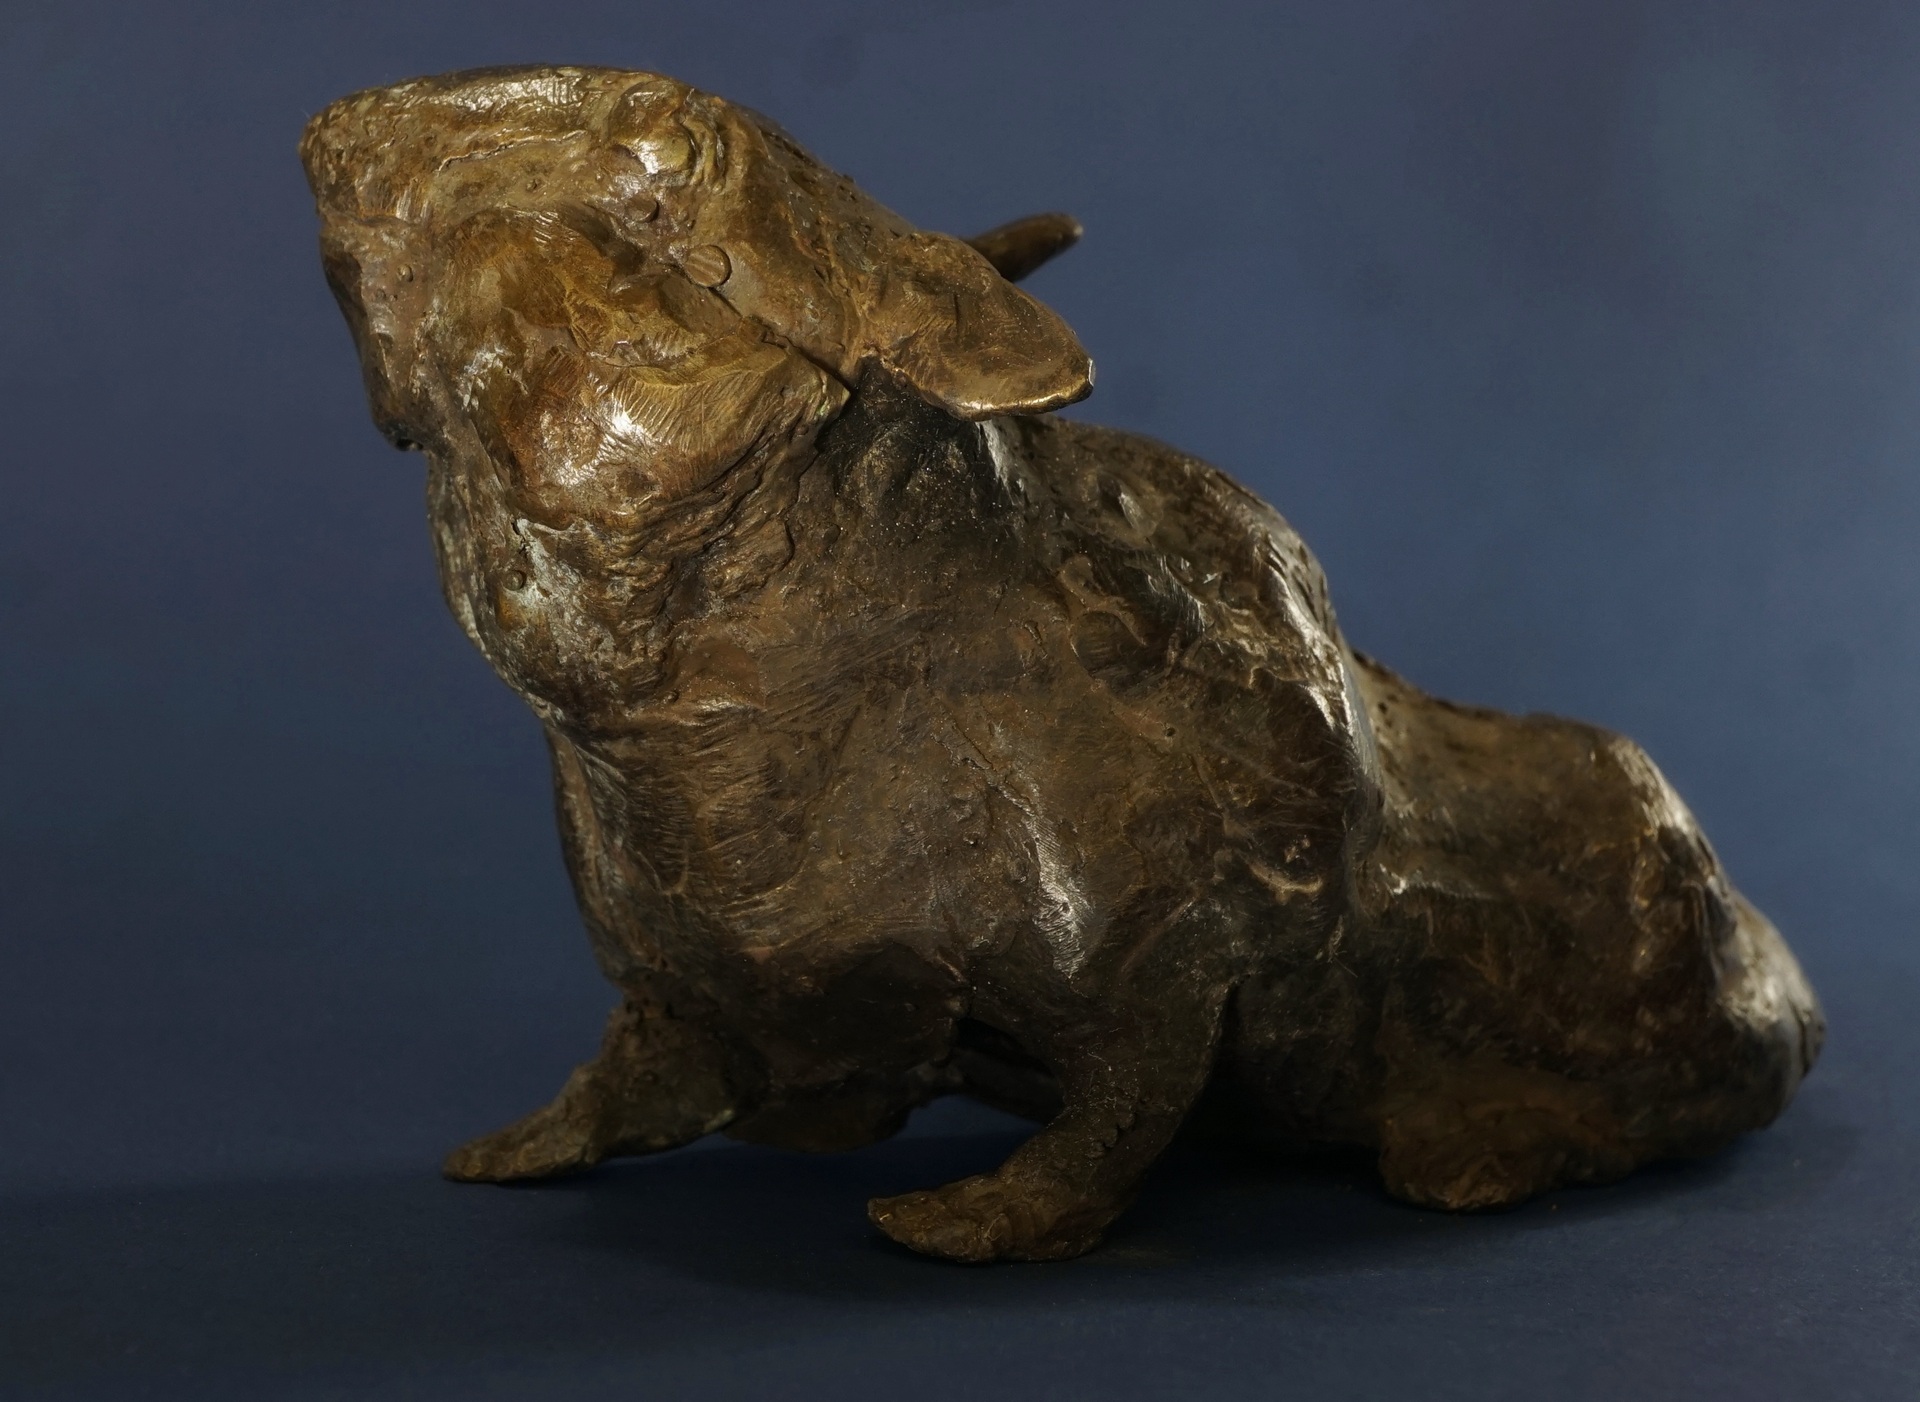 J. Osika - zdjęcie przedstawia rzeźbę chomika wykonanego w mosiądzu z brązowej patynie.